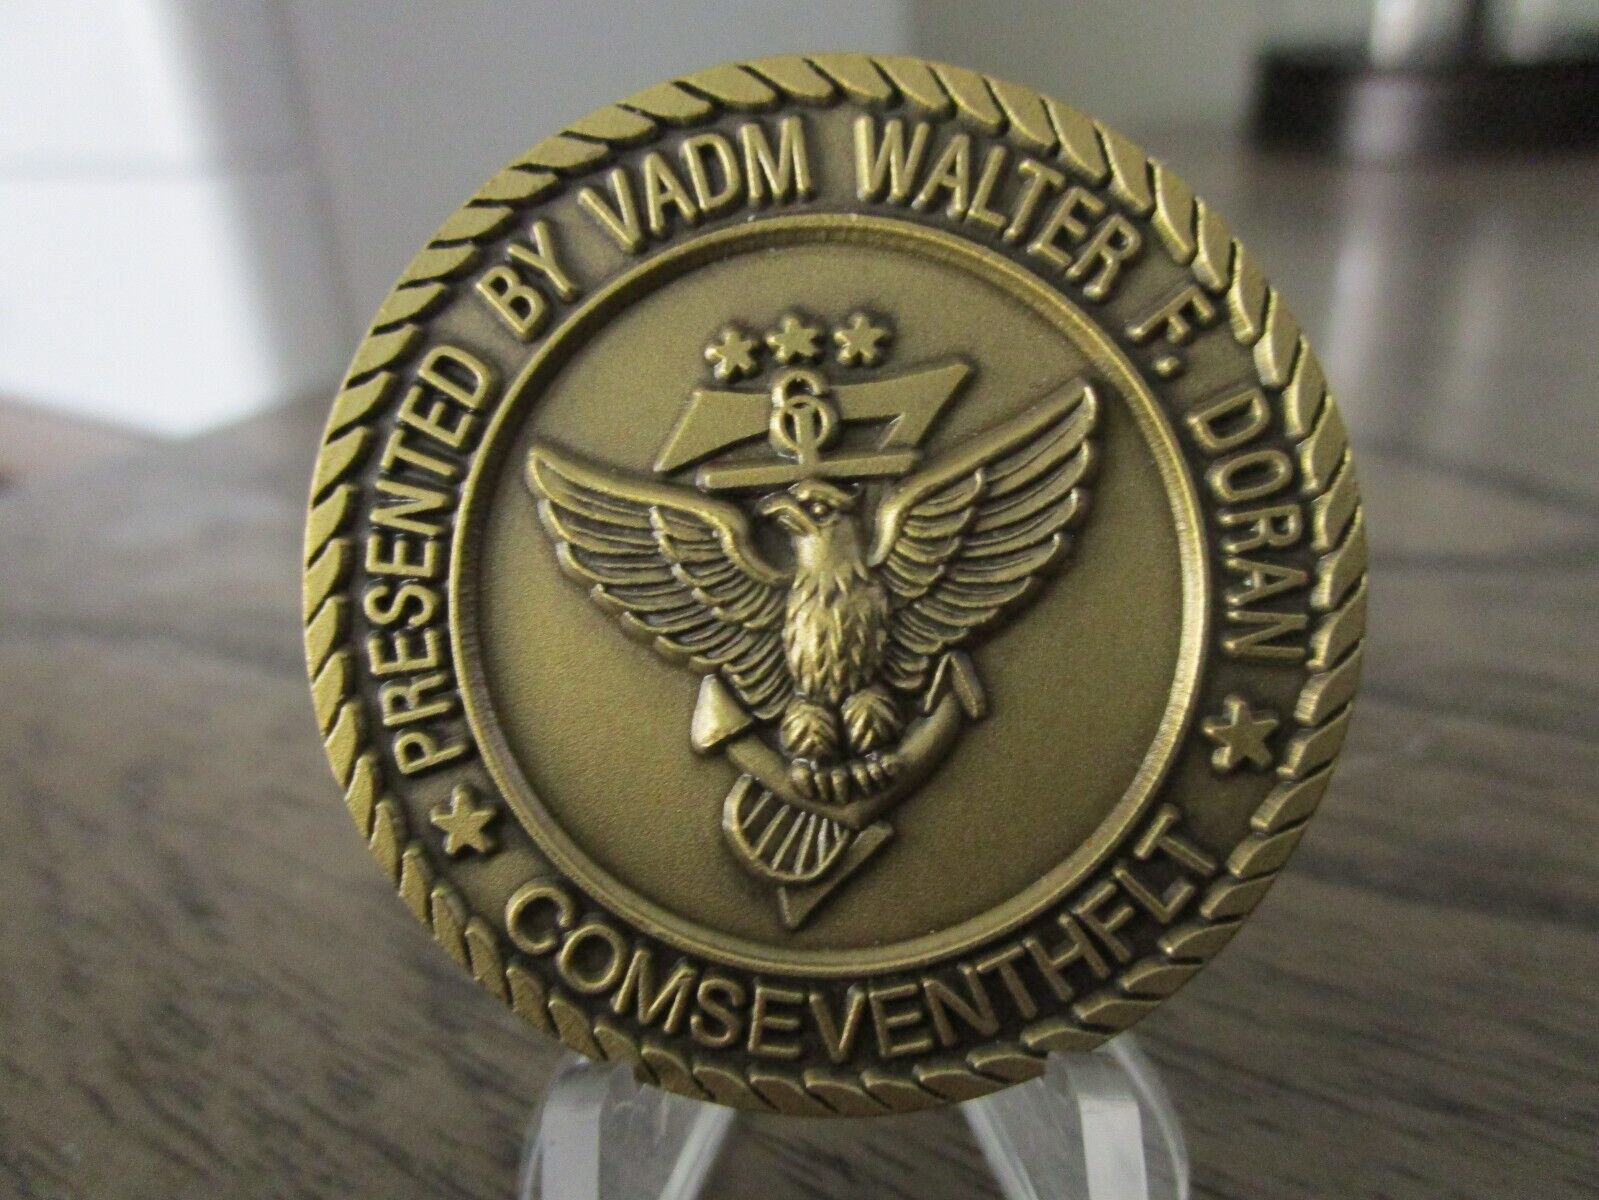 USN COMSEVENTHFLT Commander Seventh Fleet VADM Walter Doran Challenge Coin #606Q